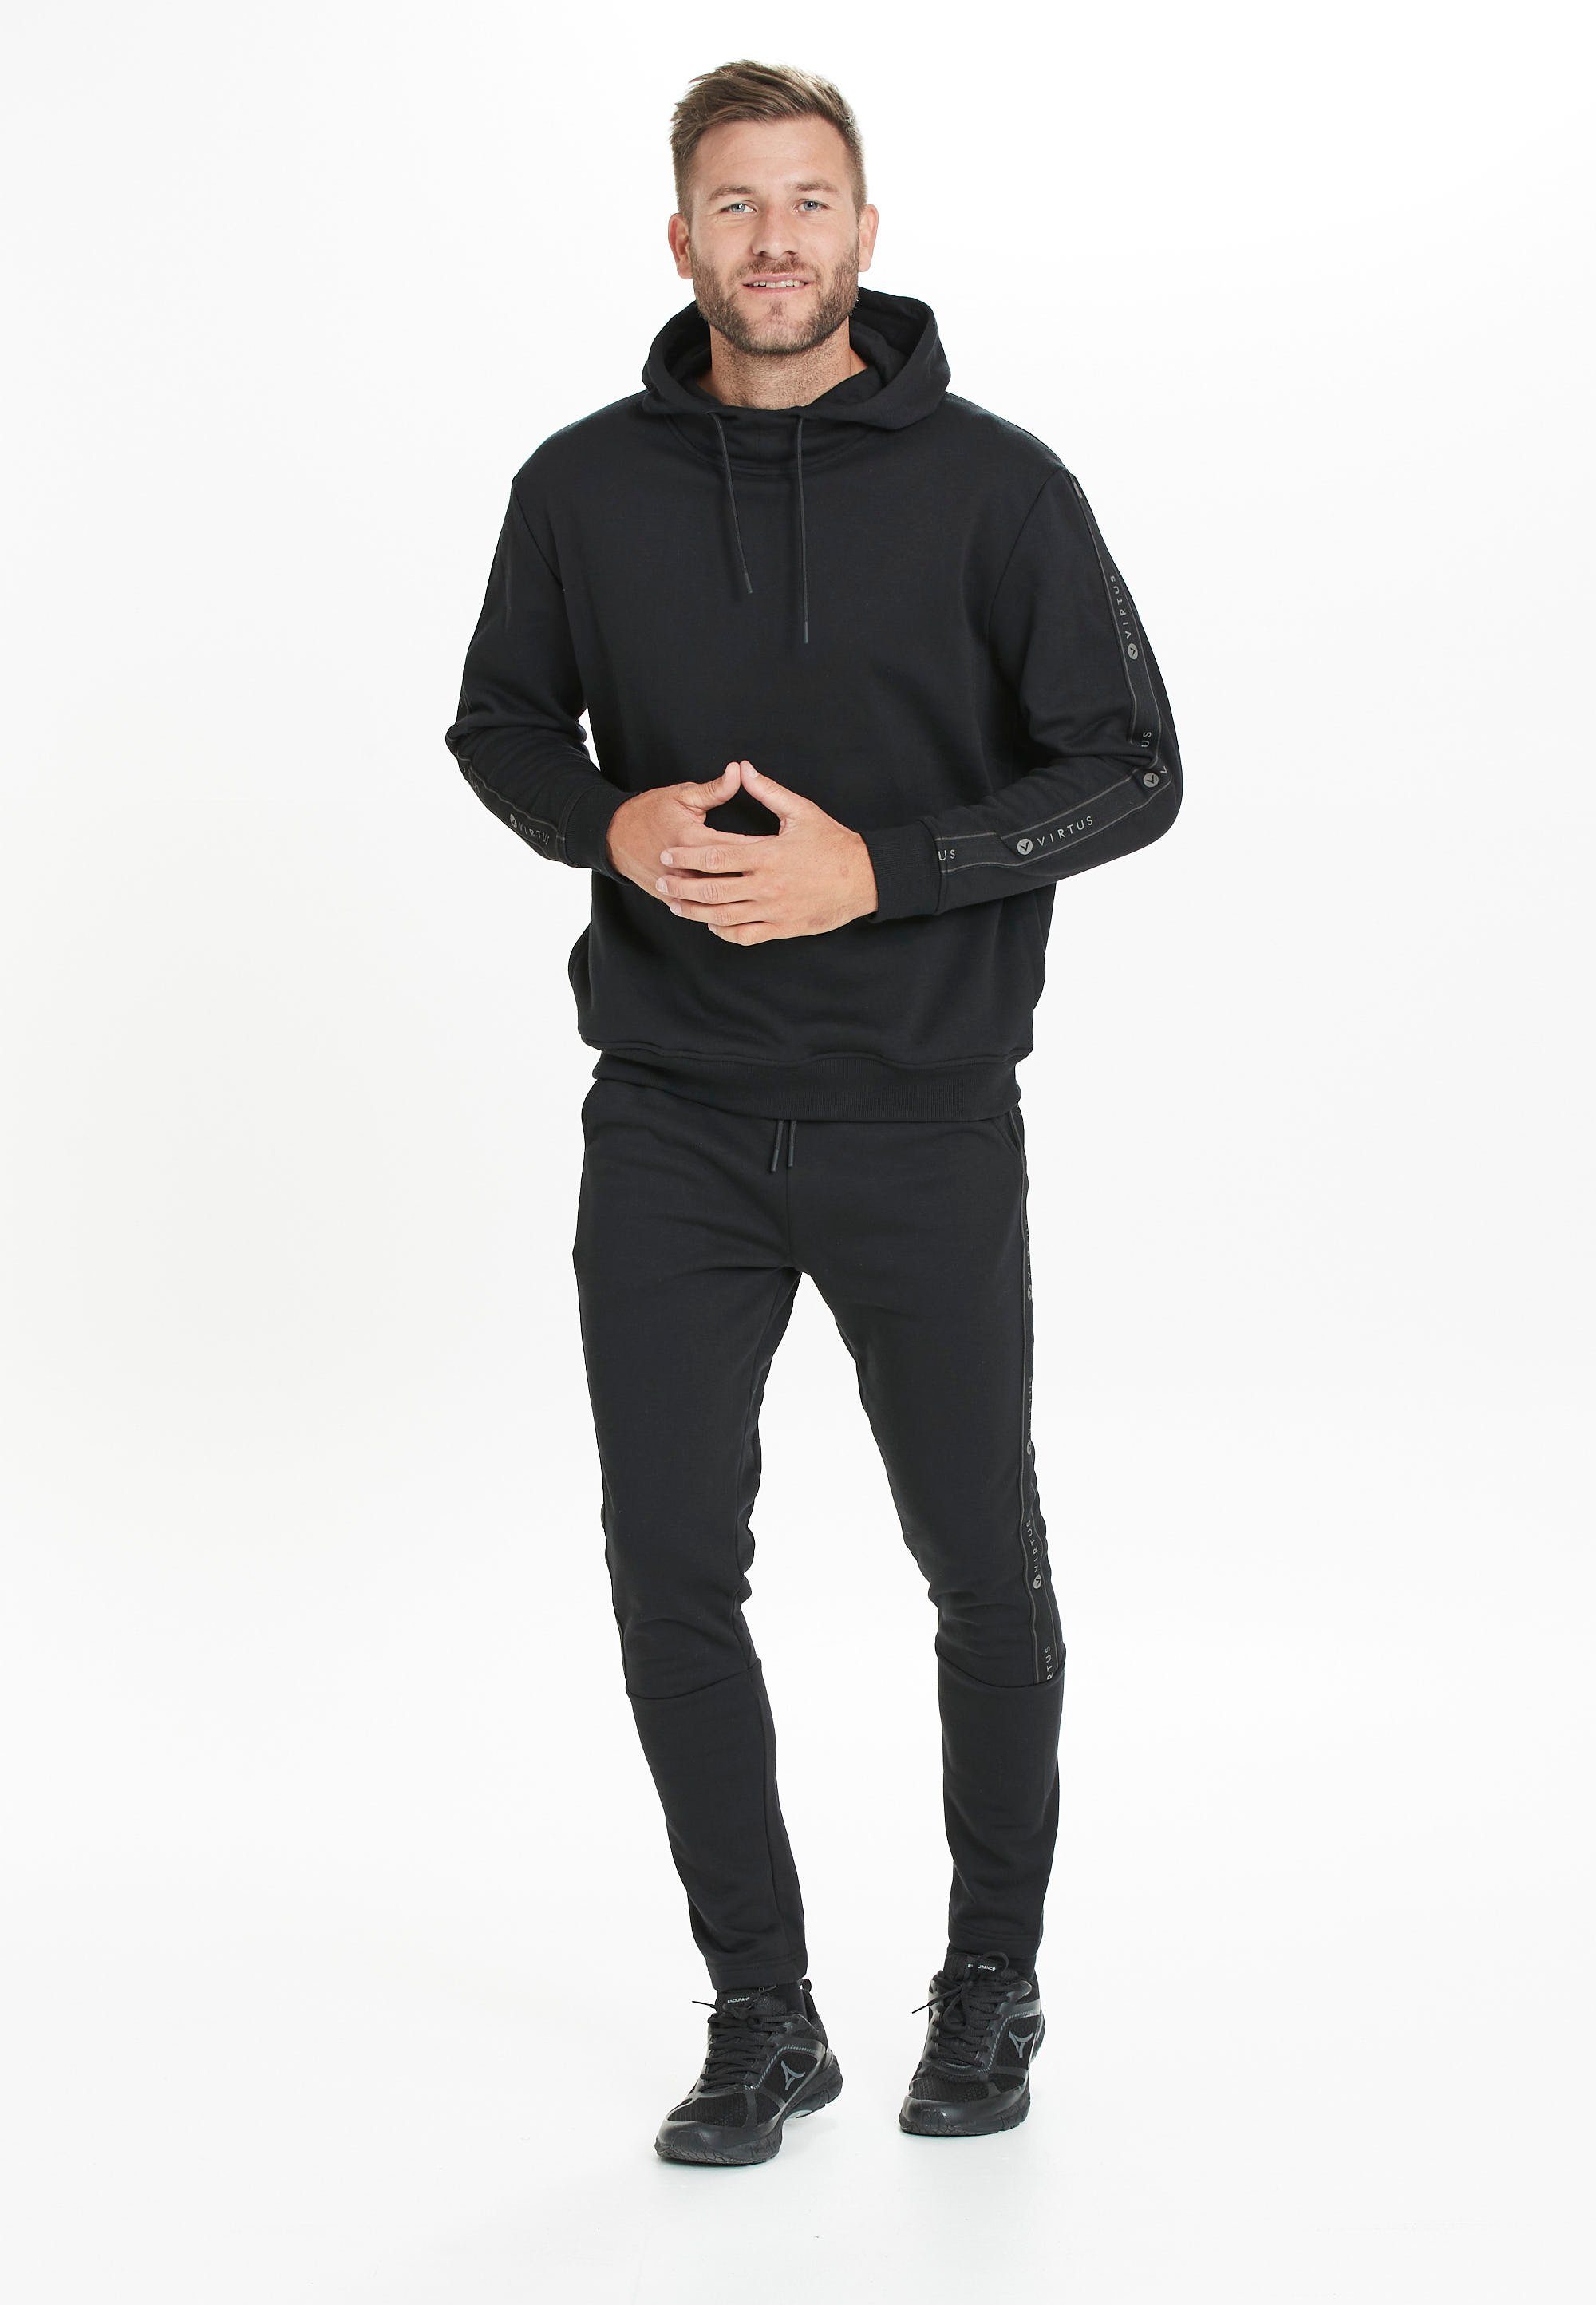 Lernow in Virtus Sweatshirt Design schwarz-schwarz sportlichem